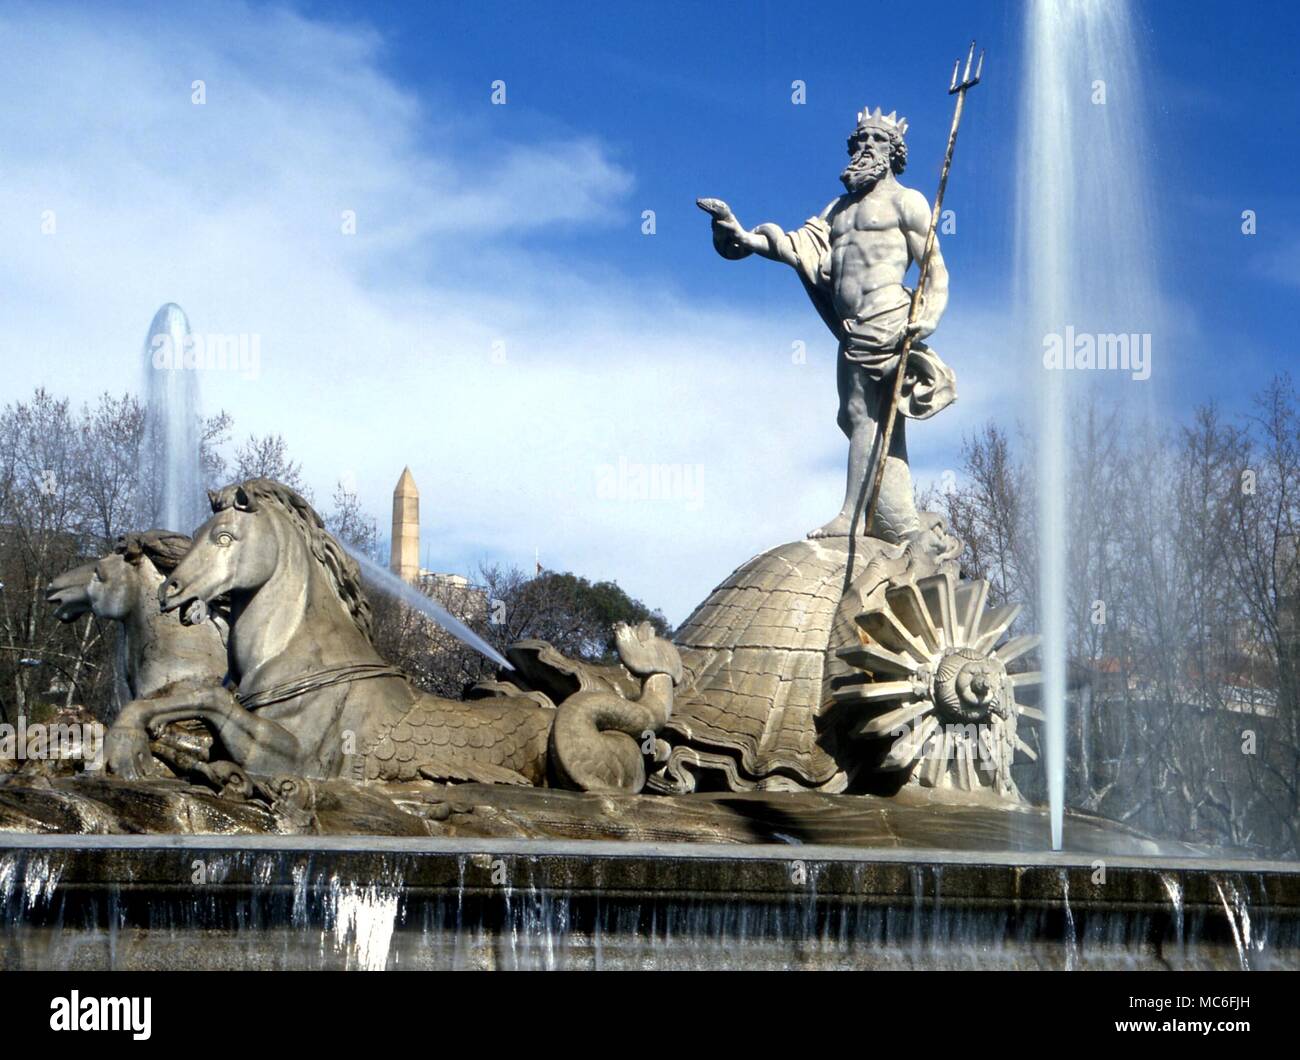 Planeten - Neptune Statue von Neptun, durch Wasser und Wolke umgeben - Springbrunnen Statue in Sevilla Spanien Stockfoto